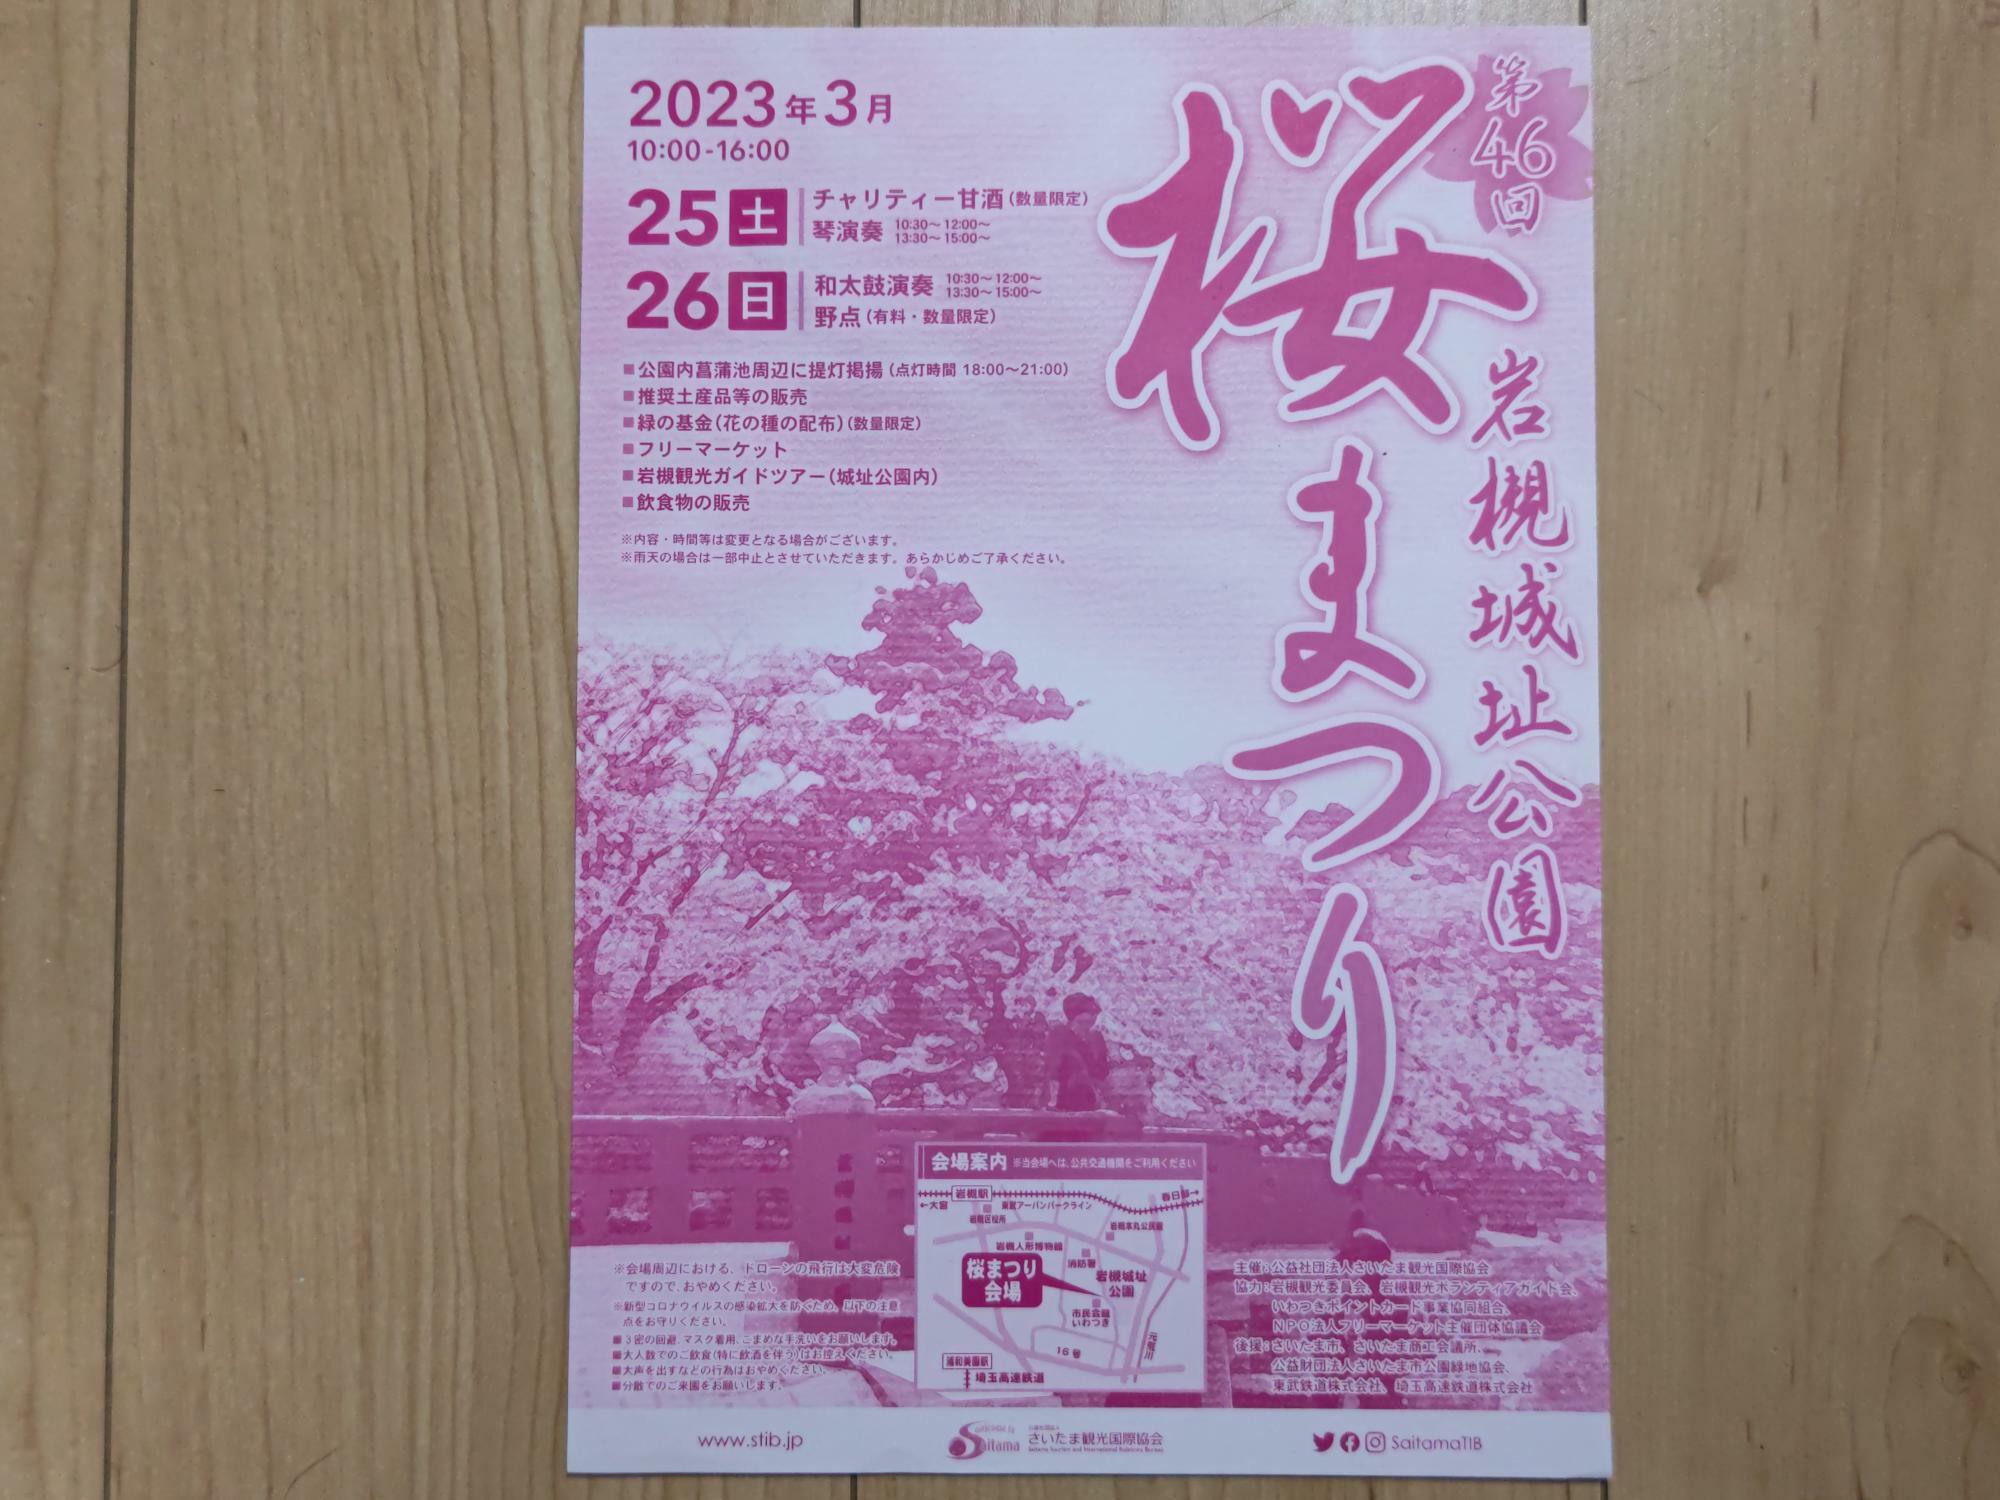 2023年3月に開催された「岩槻城址公園 桜まつり」のチラシ。